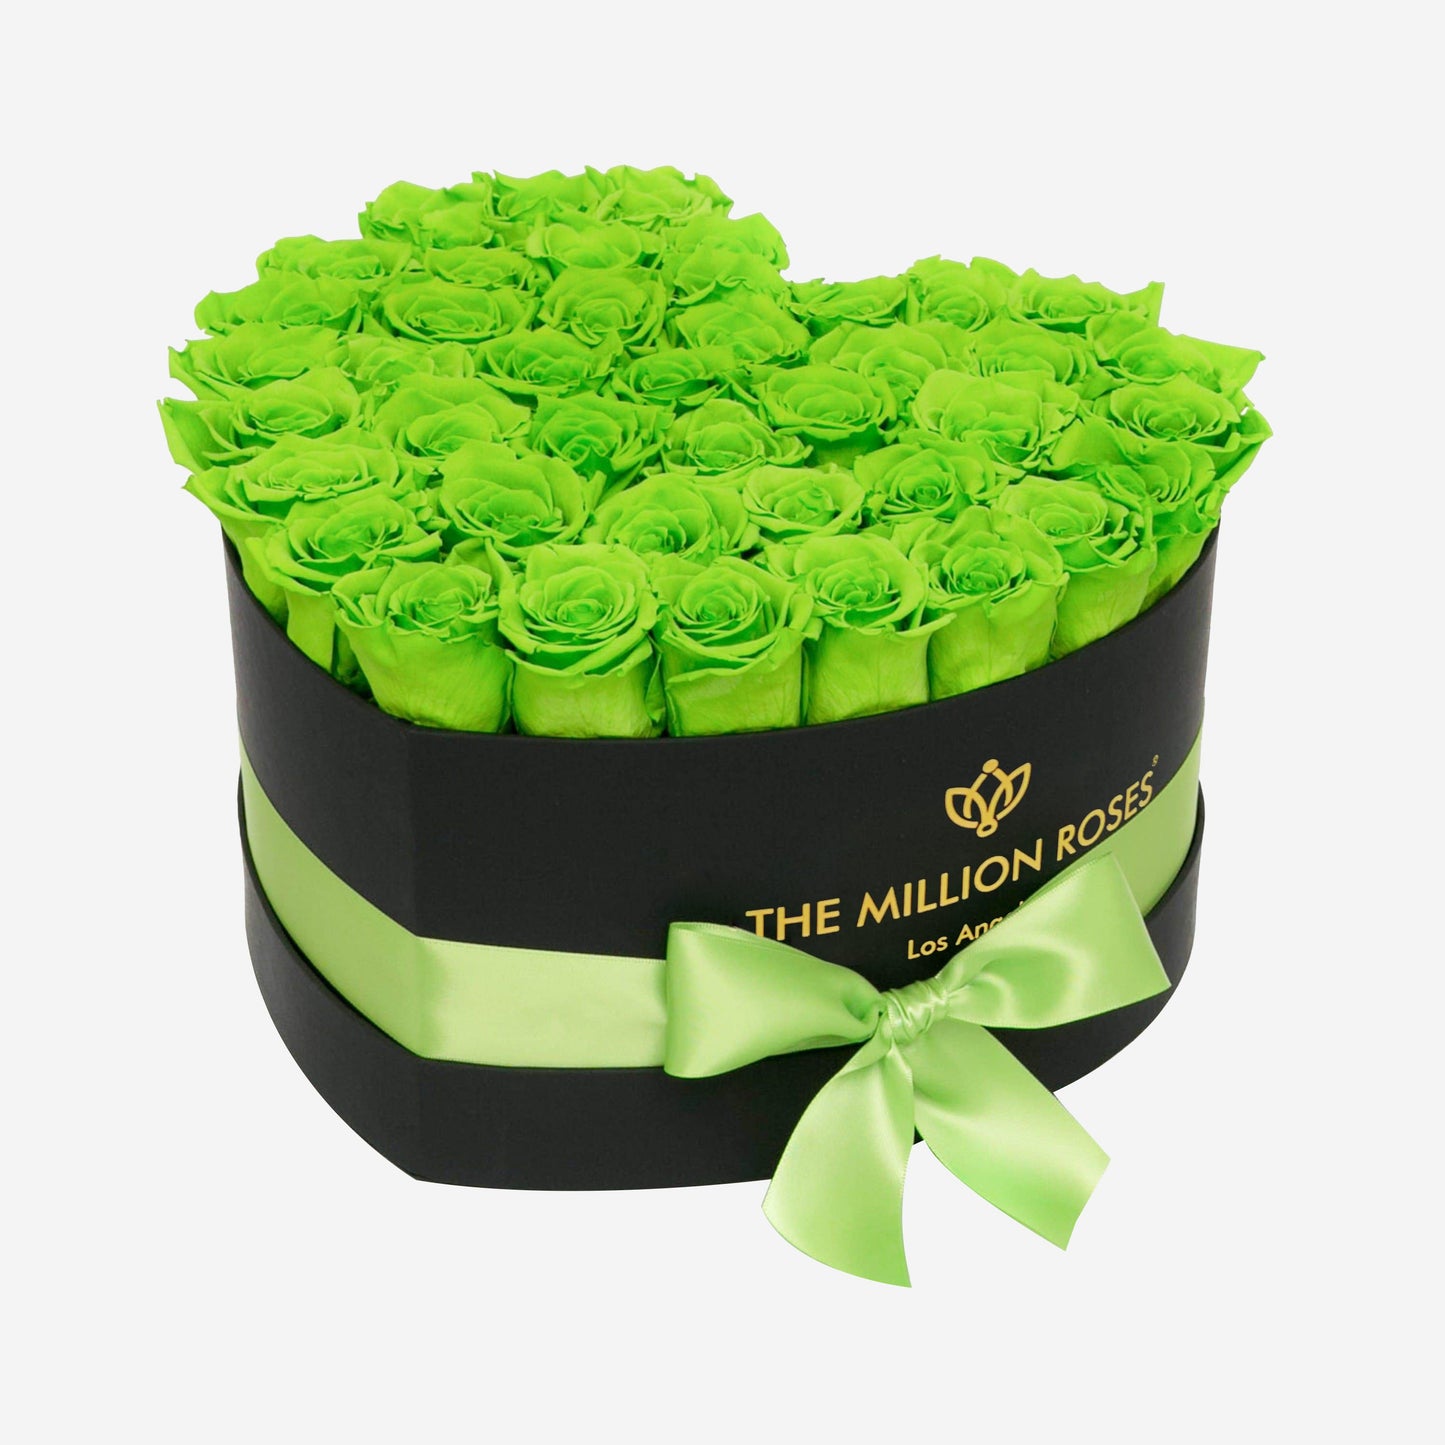 Heart Black Box | Light Green Roses - The Million Roses